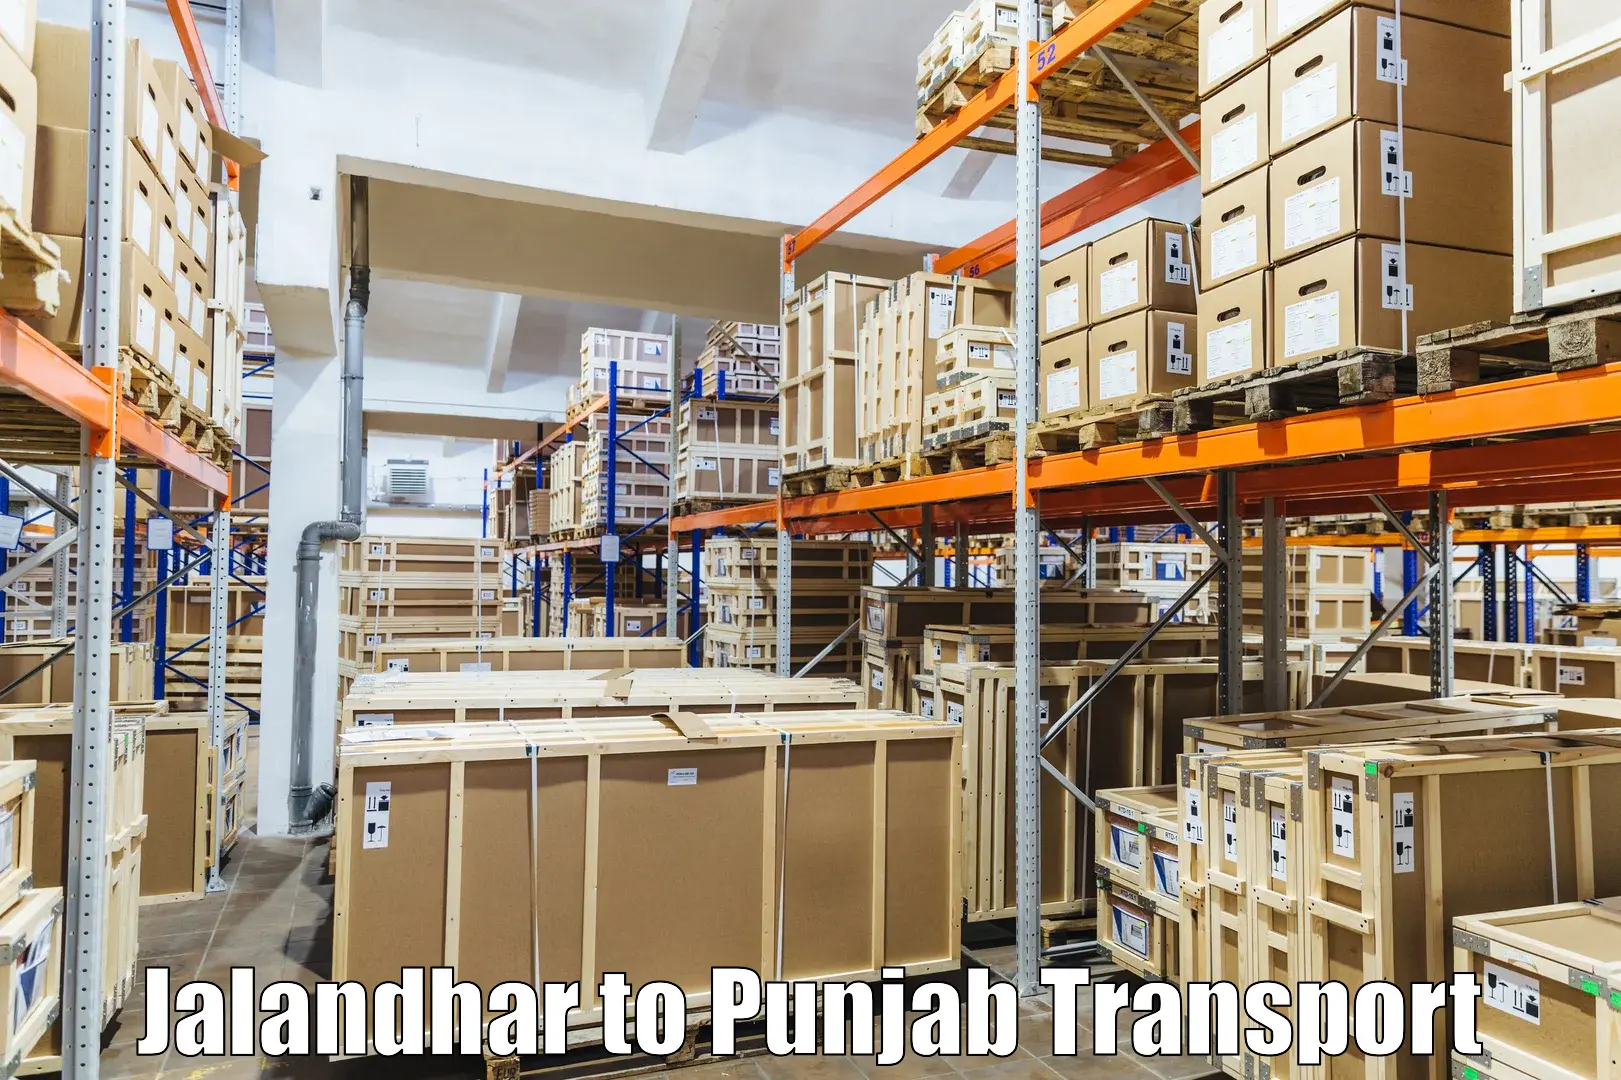 Commercial transport service Jalandhar to Jalandhar